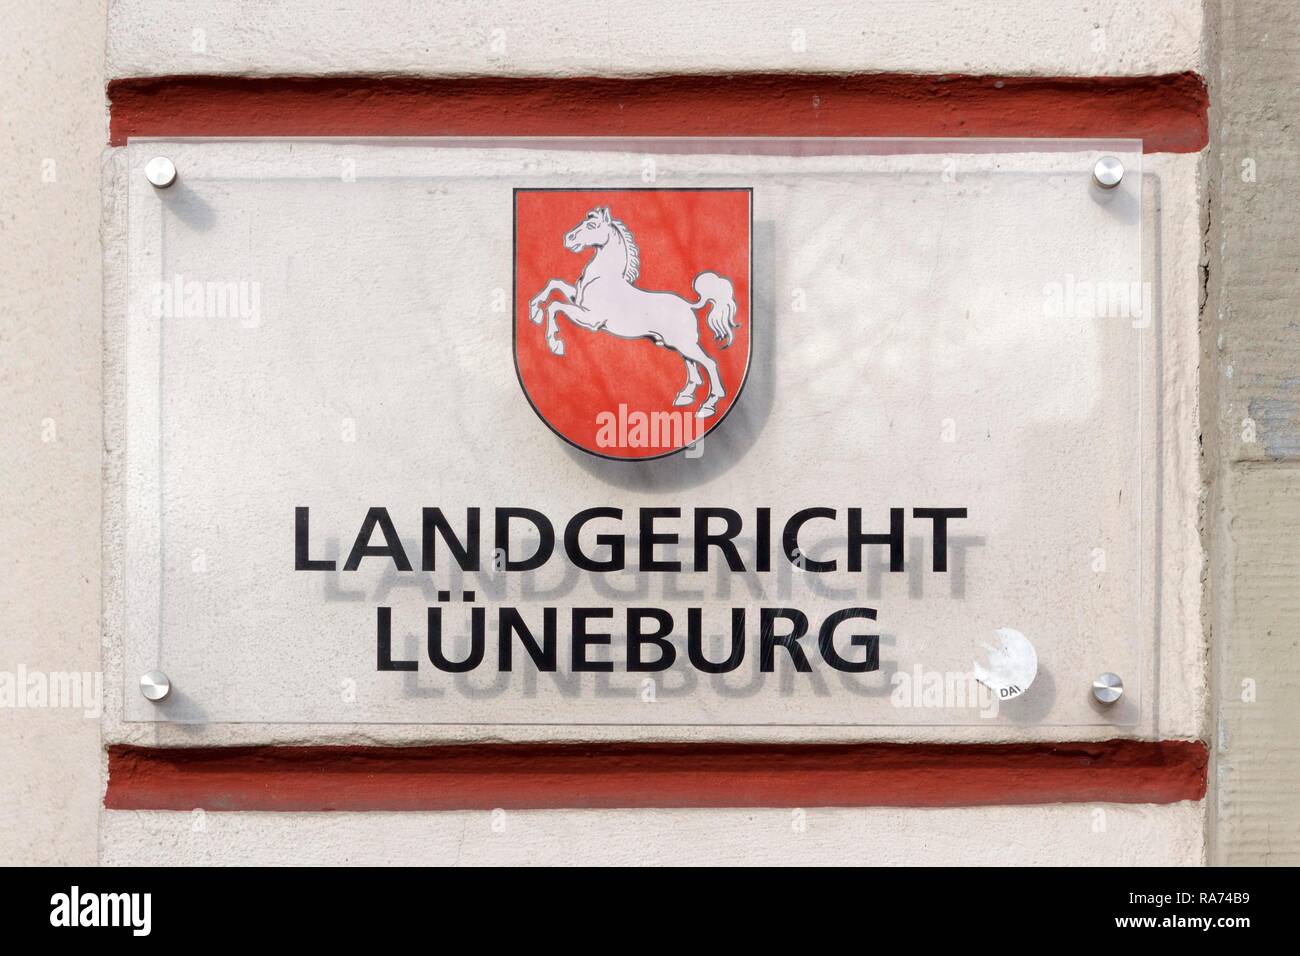 Signe, Landgericht Hamburg ou d'une cour de district, Lunebourg, Basse-Saxe, Allemagne Banque D'Images